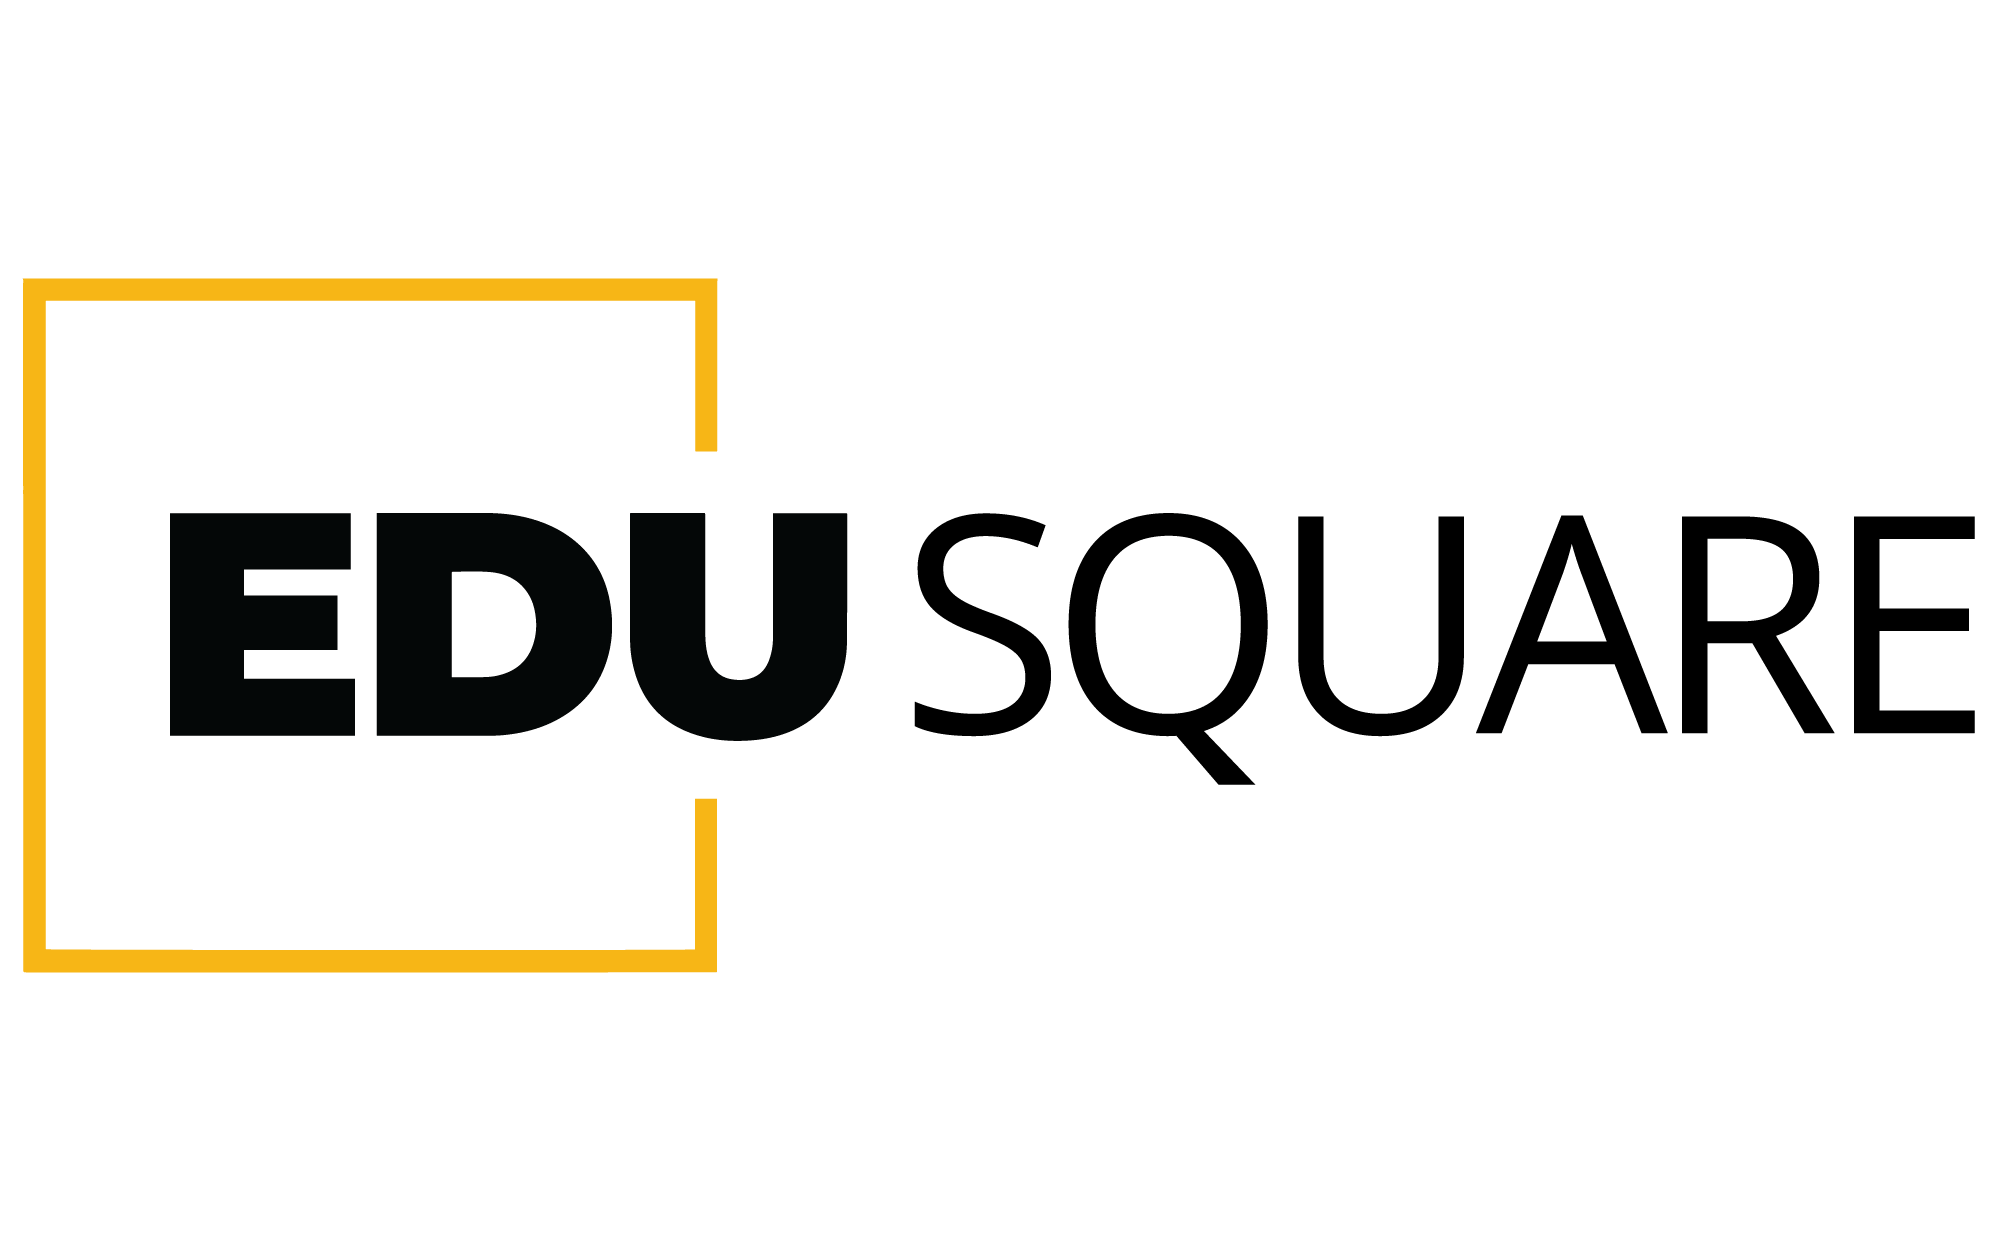 Edusquare Coaching Institute|Colleges|Education